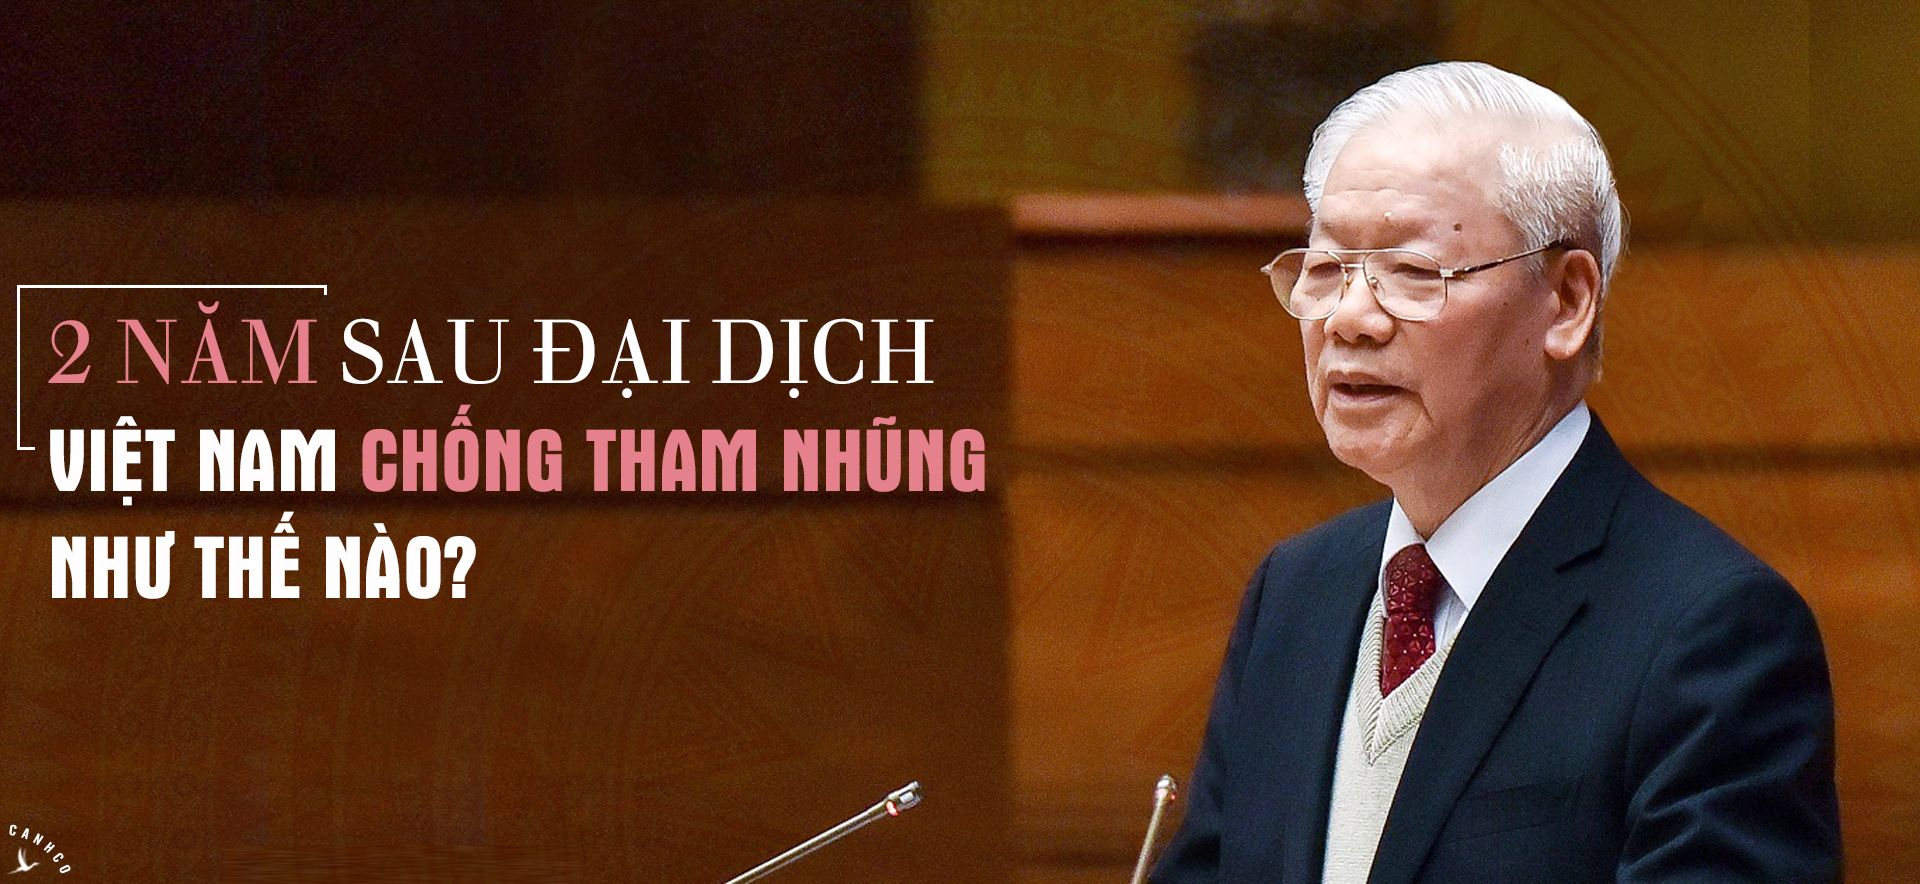 Việt Nam chống tham nhũng như thế nào?